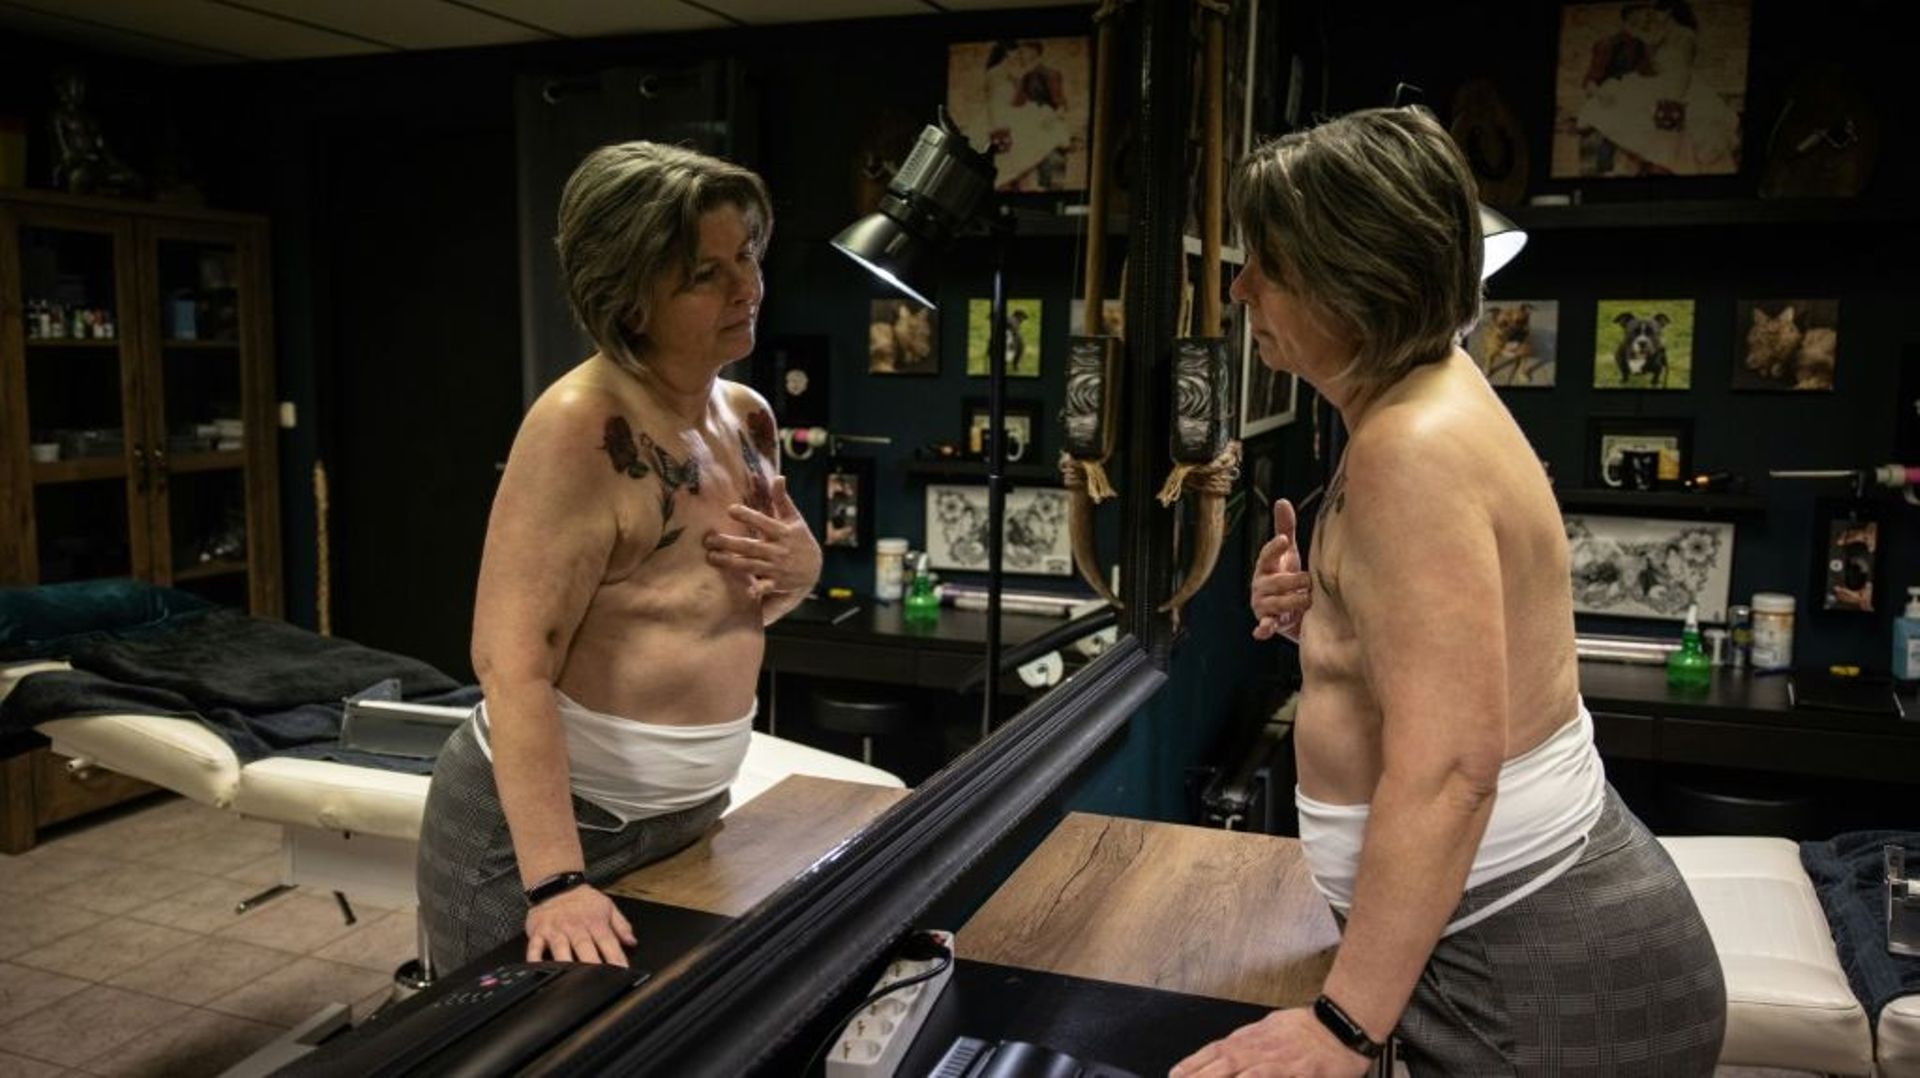 Jacqueline van Schaik se fait tatouer des fleurs sur la poitrine après une mastectomie due à un cancer des seins, à Lelystad, aux Pays-Bas, le 10 janvier 2023